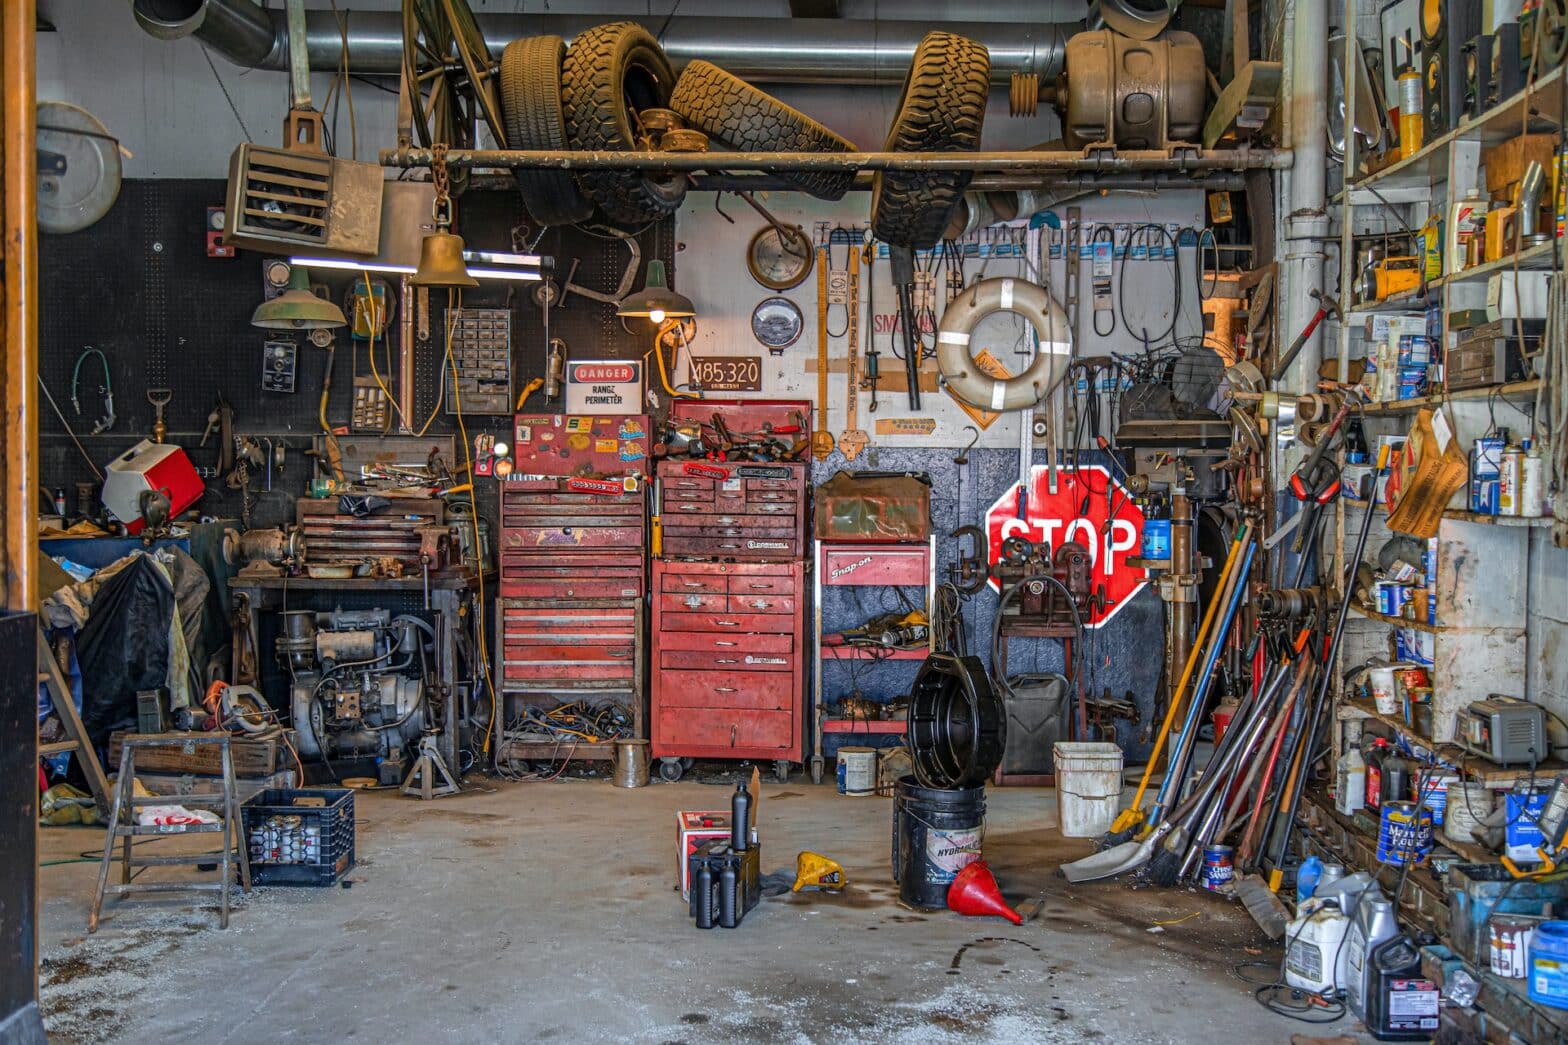 Louer son équipement de garage simplement ? – Juste Auto